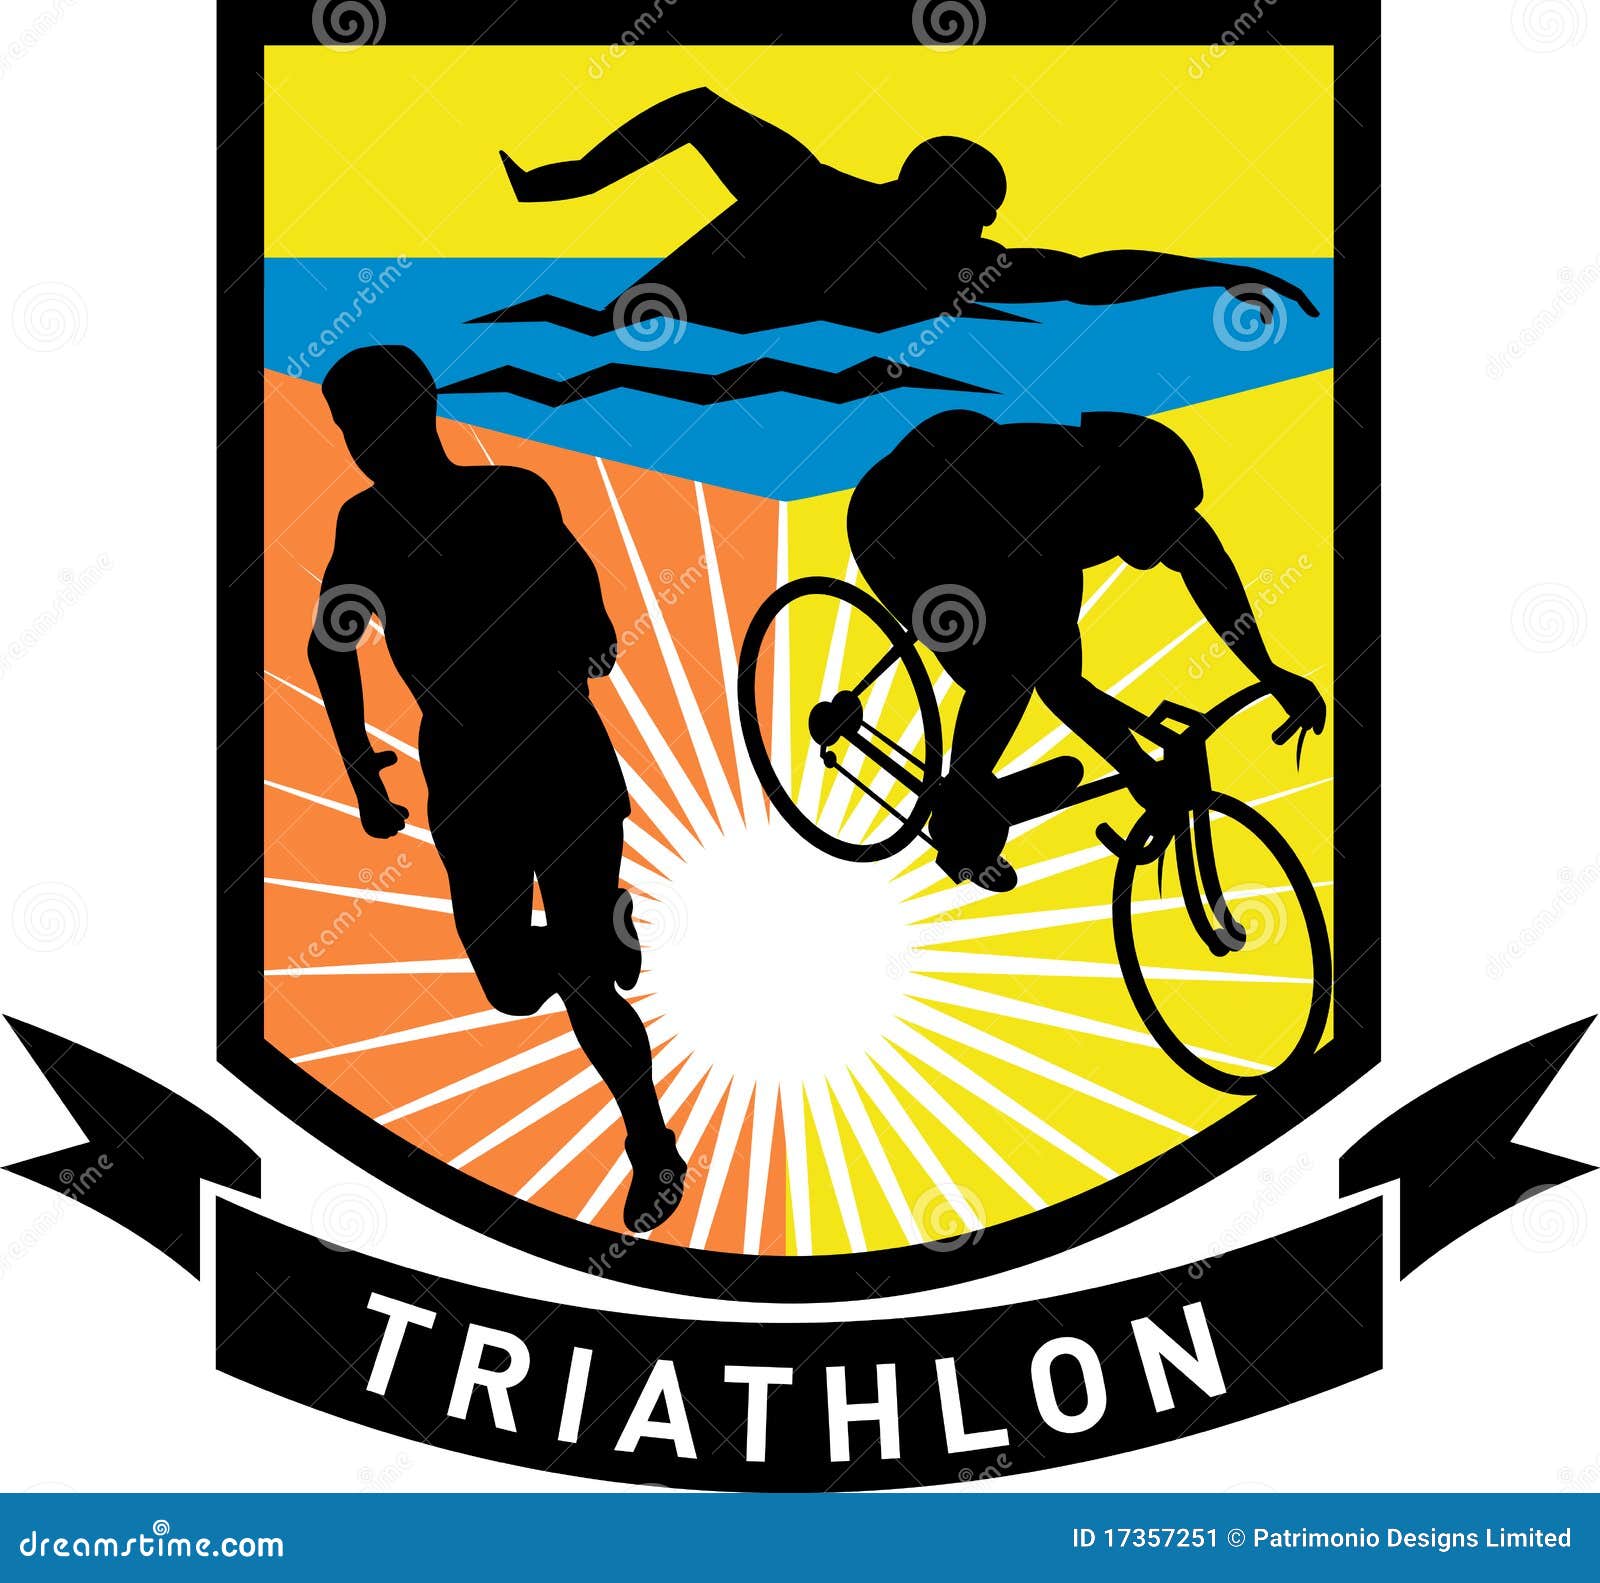 Triathlon Logo Decal Sticker Cycling Swim Run Bike 